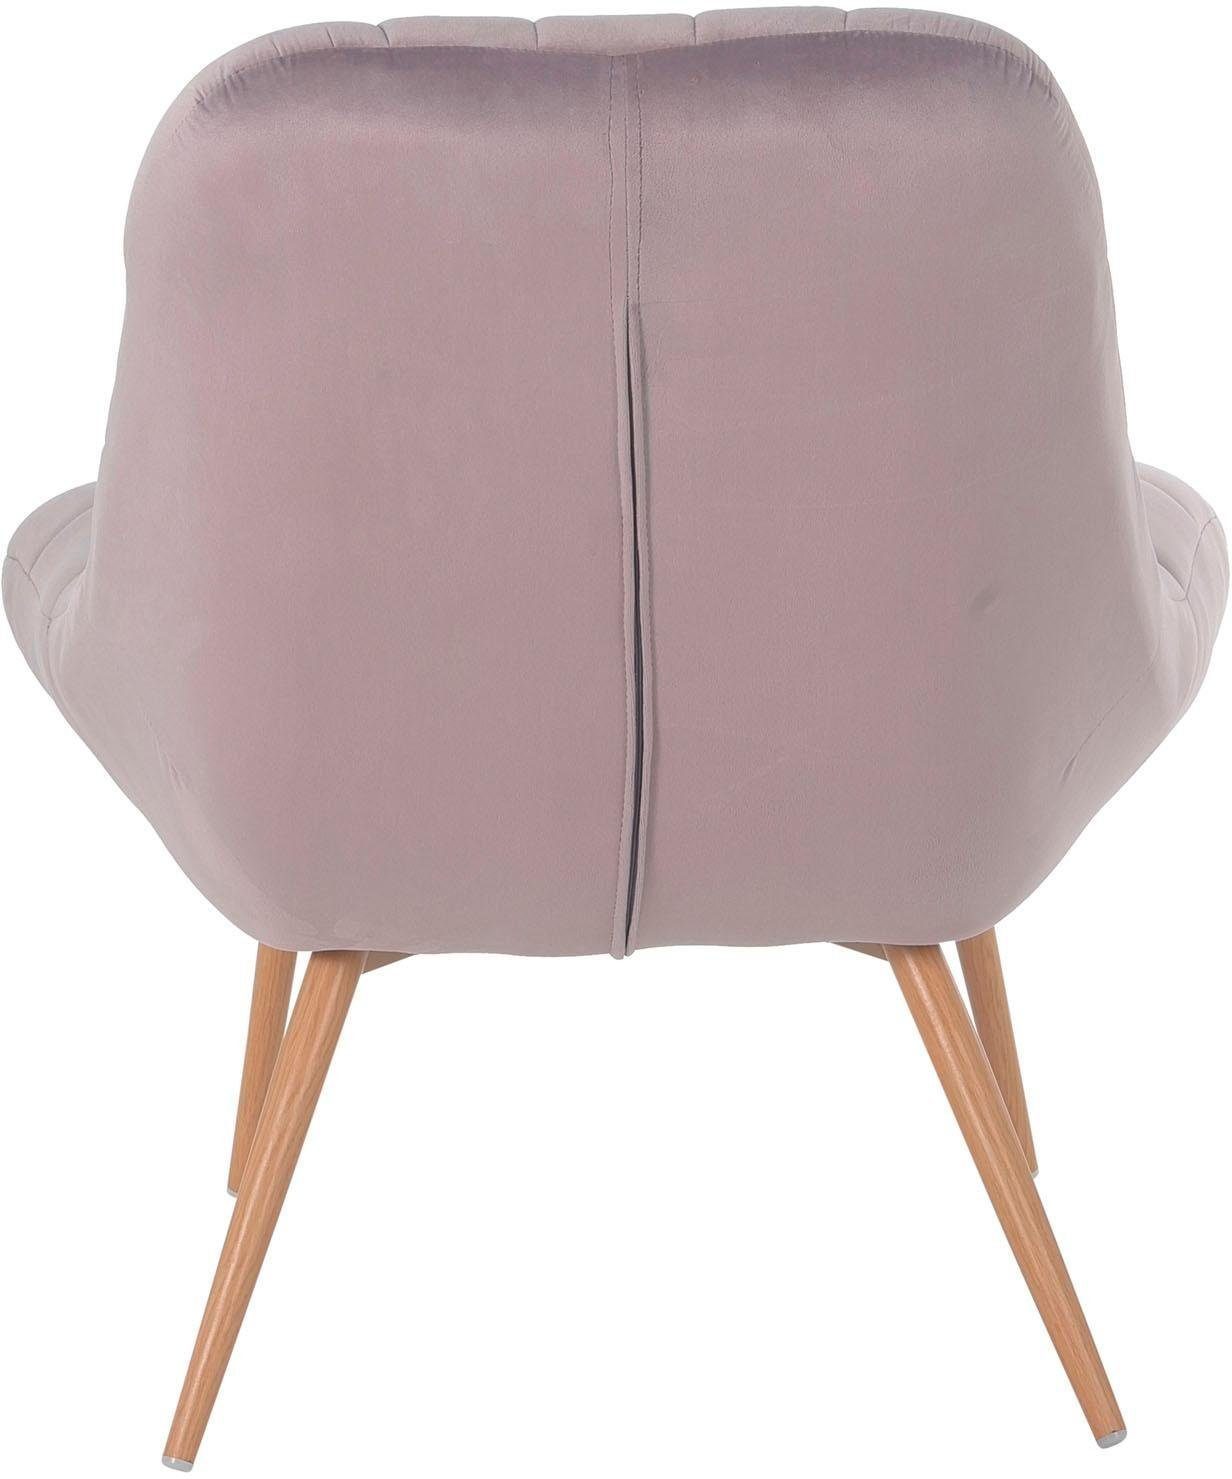 SalesFever Relaxsessel, mit oder mit schwarzen Beinen naturfarbenen rosa/holzfarben XXL-Steppung